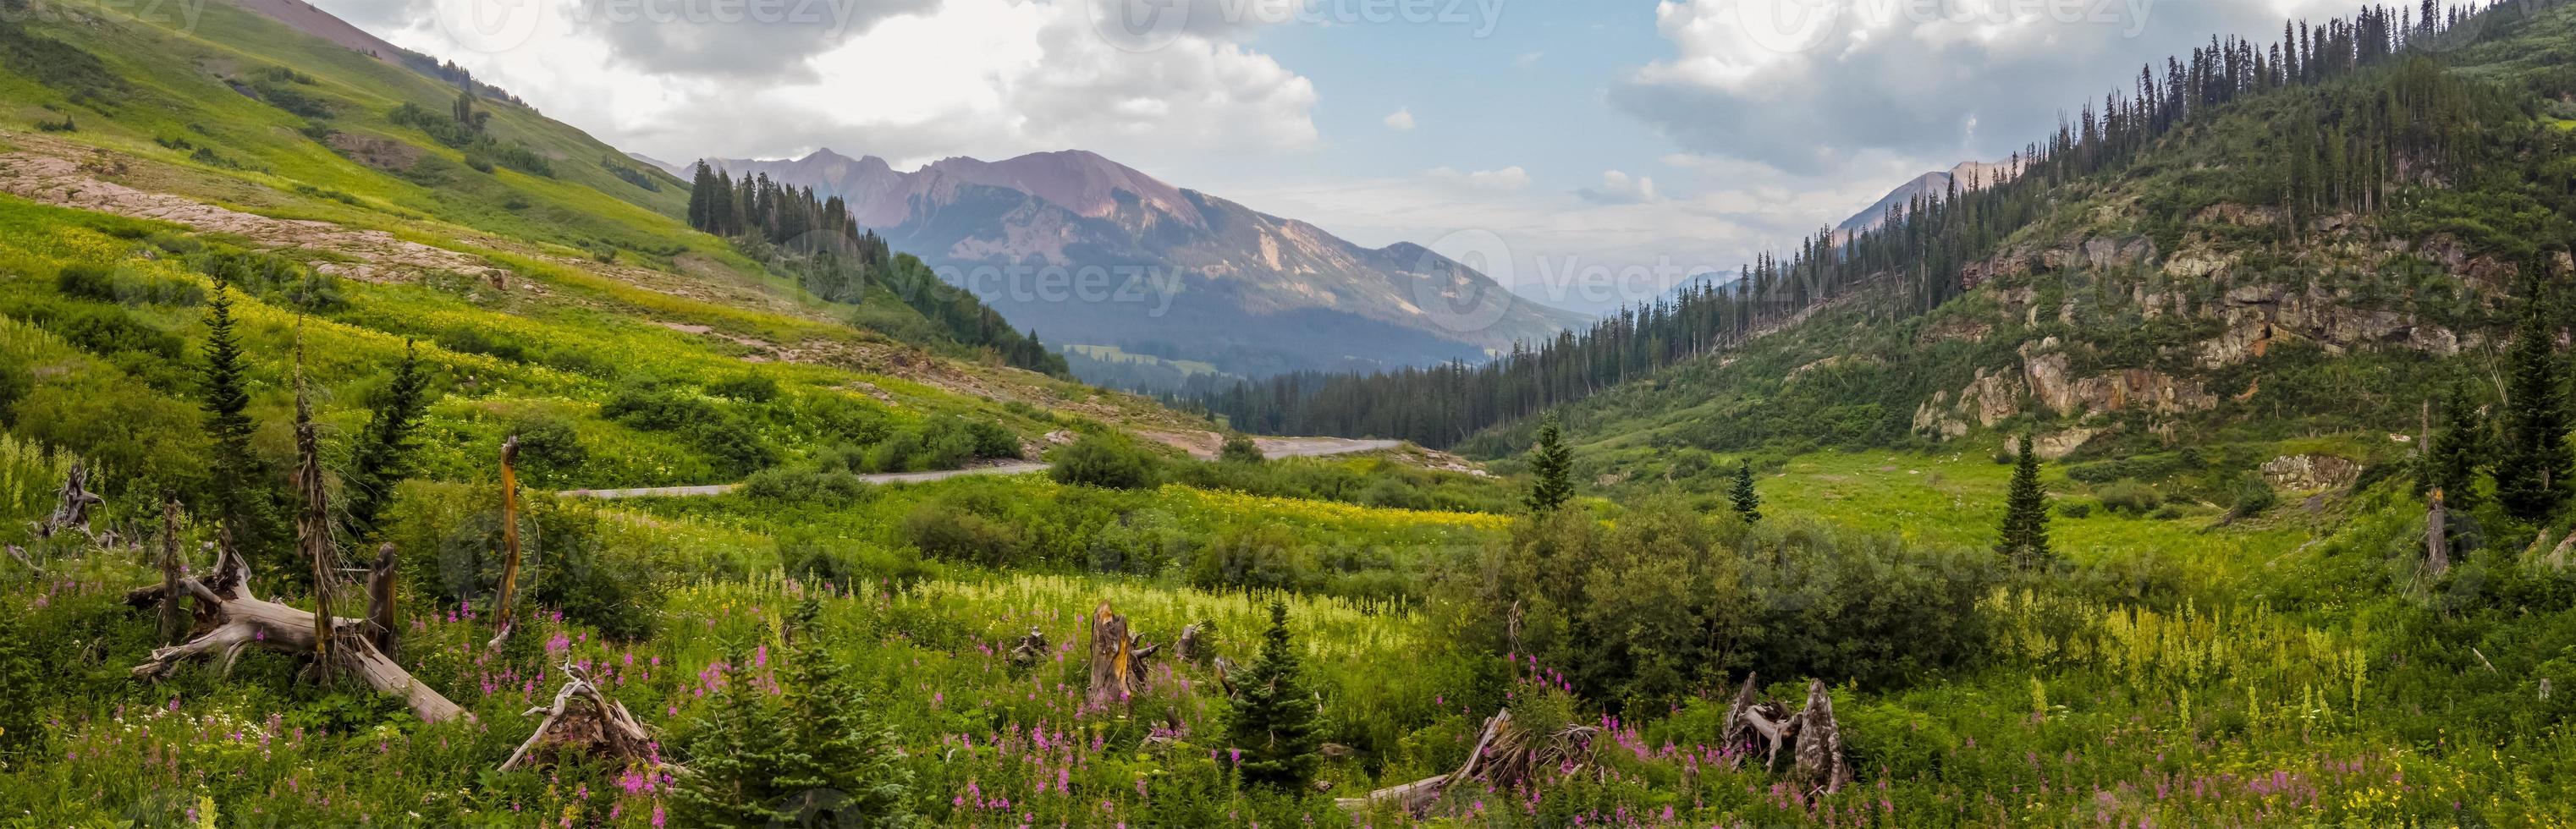 vista panorámica de los prados de flores silvestres en las montañas rocosas de colorado cerca de crested butte foto